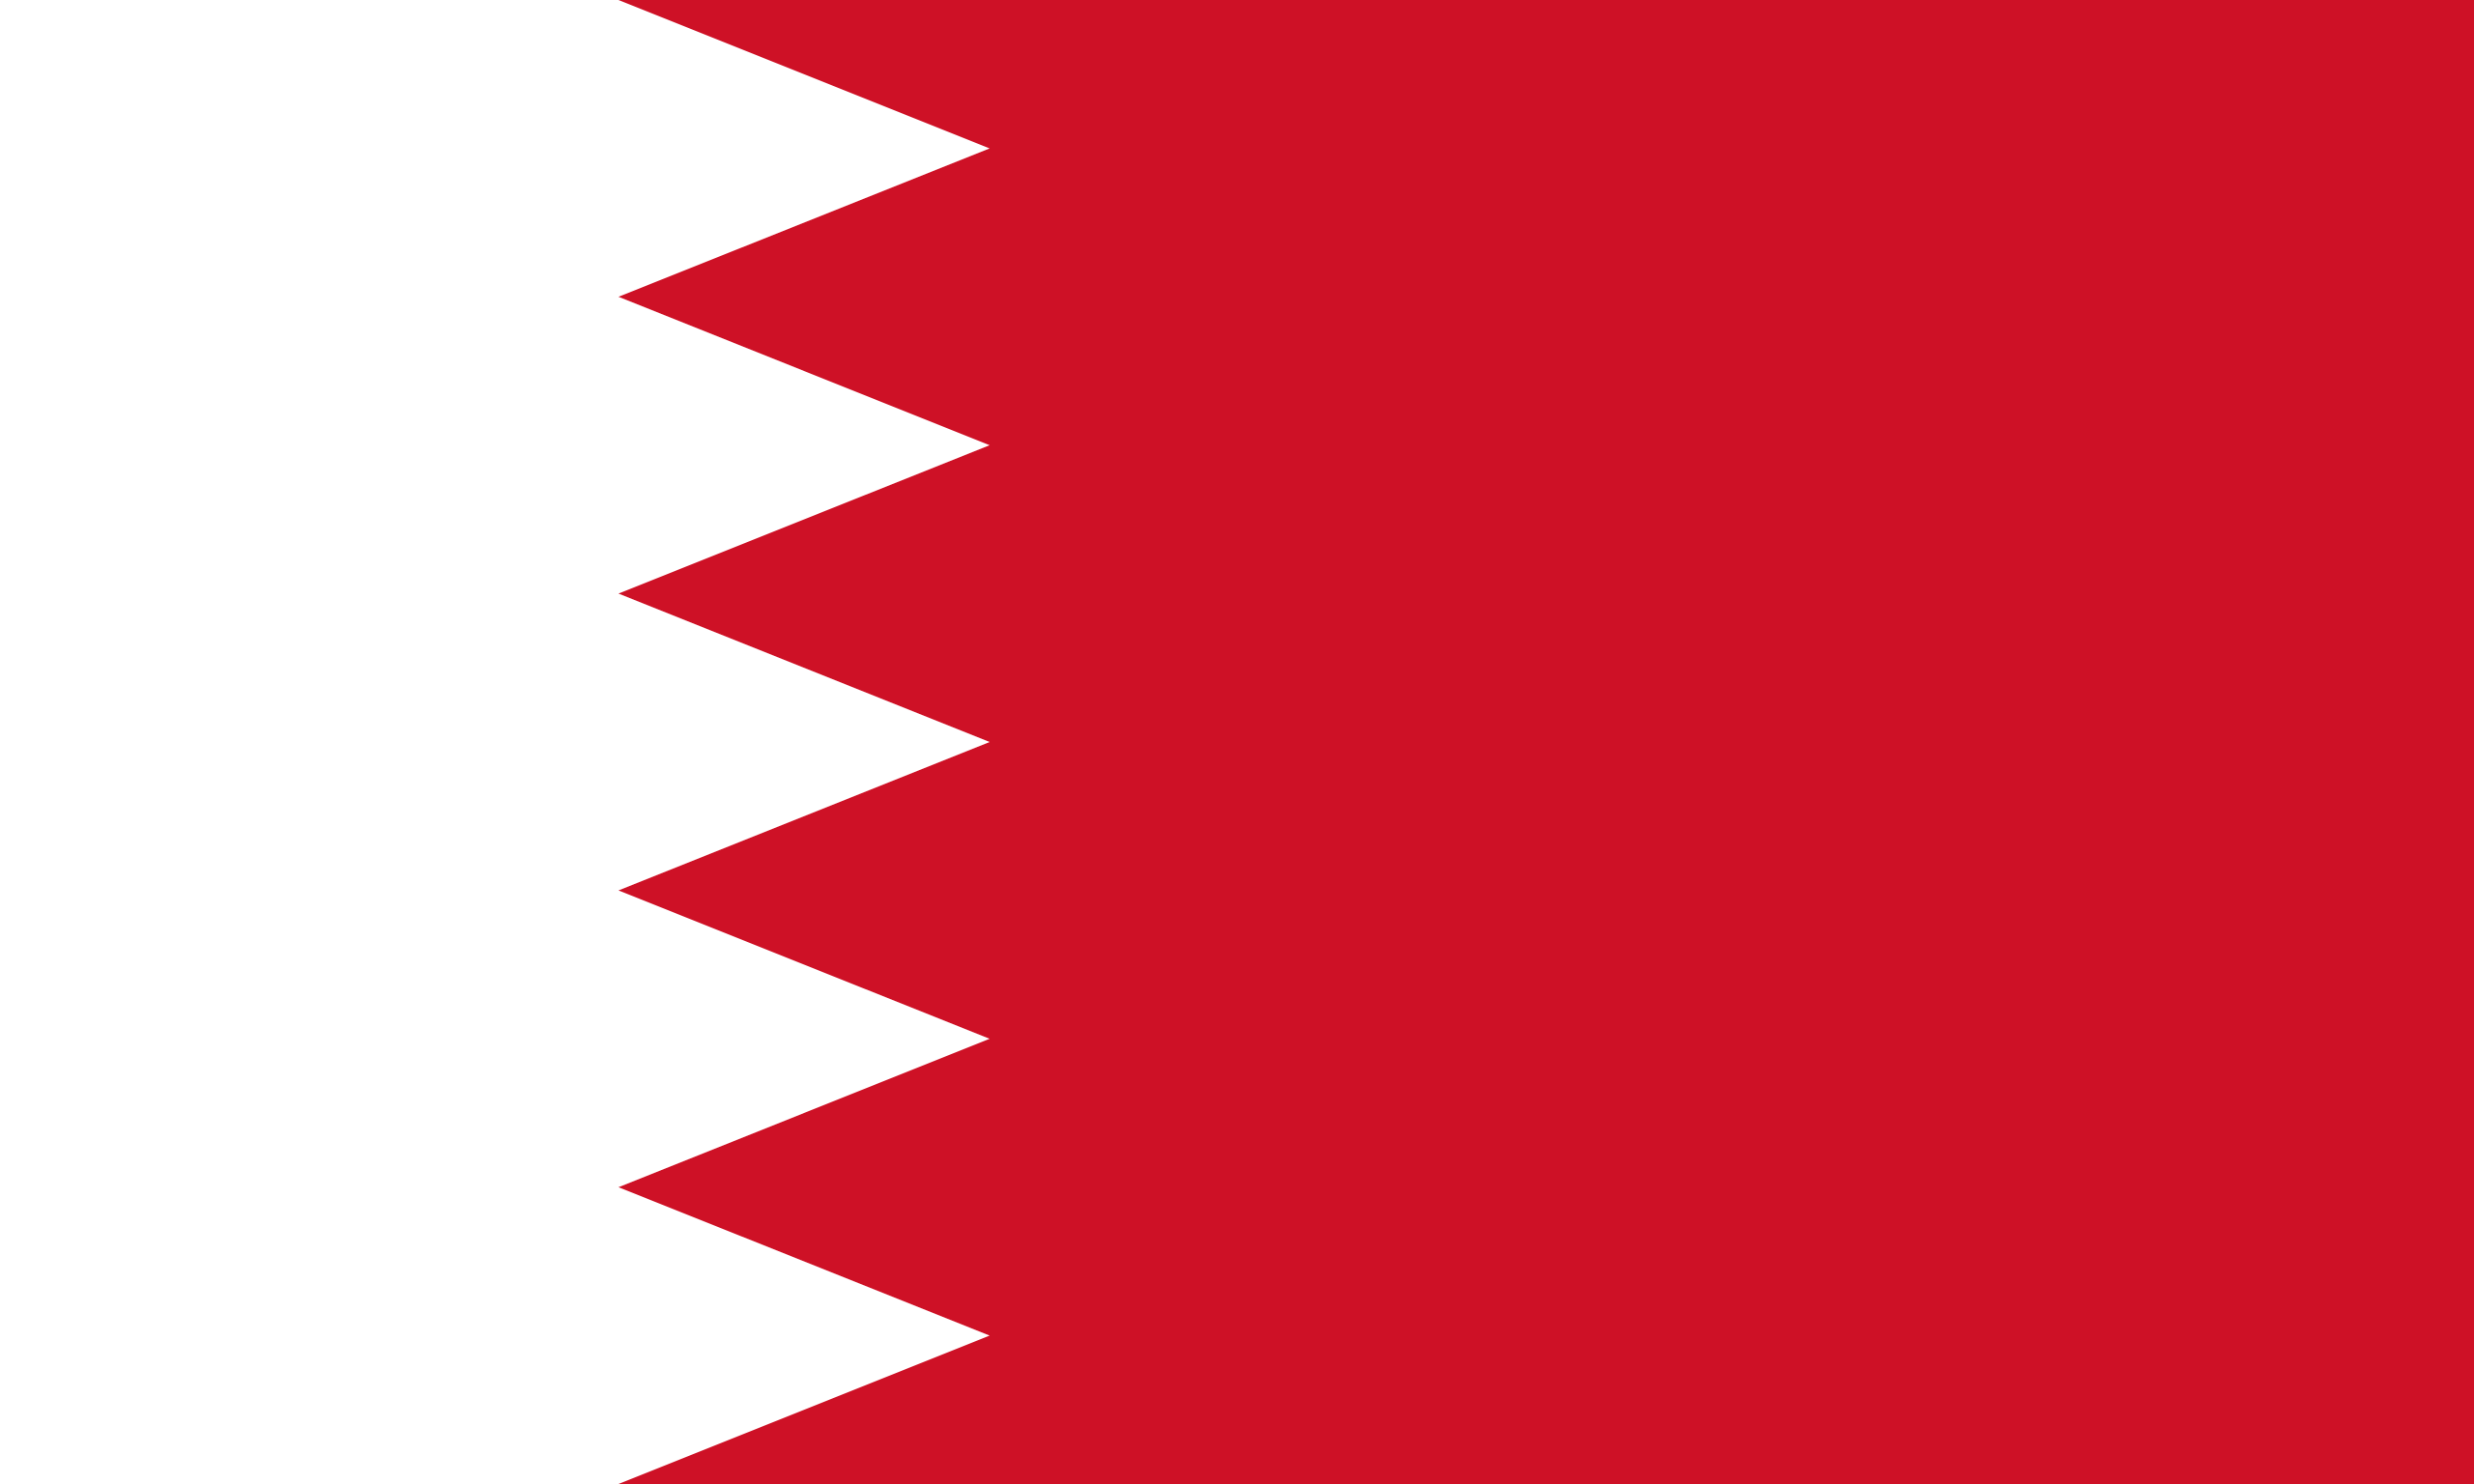 Flag_of_Bahrain.svg